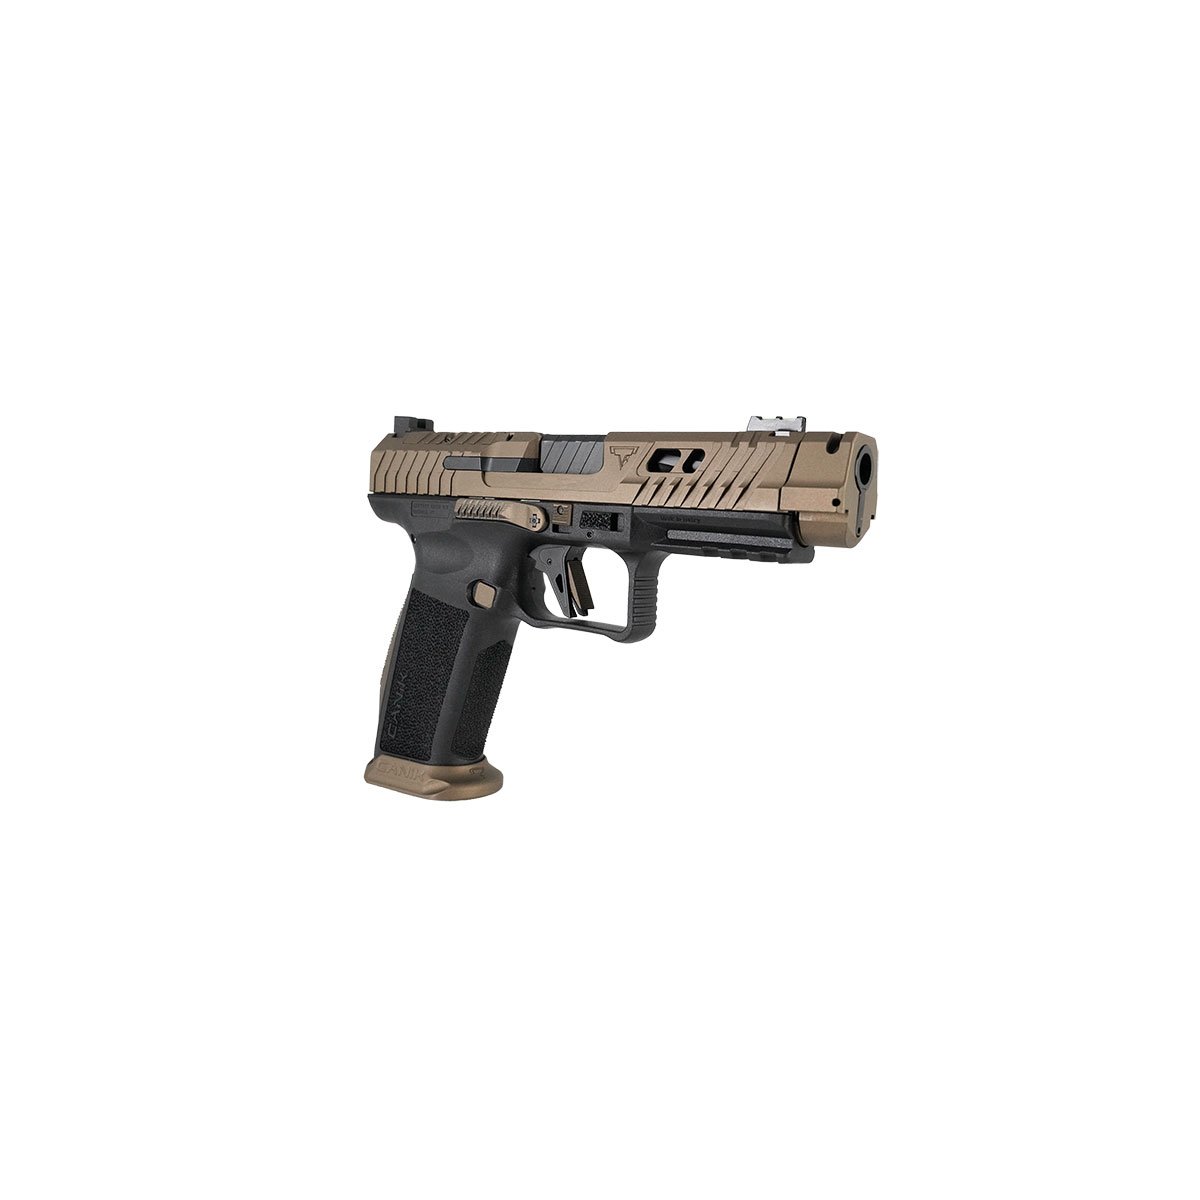 Canik TP9 Elite Combat FDE pistol 9mm cal. pair - shop